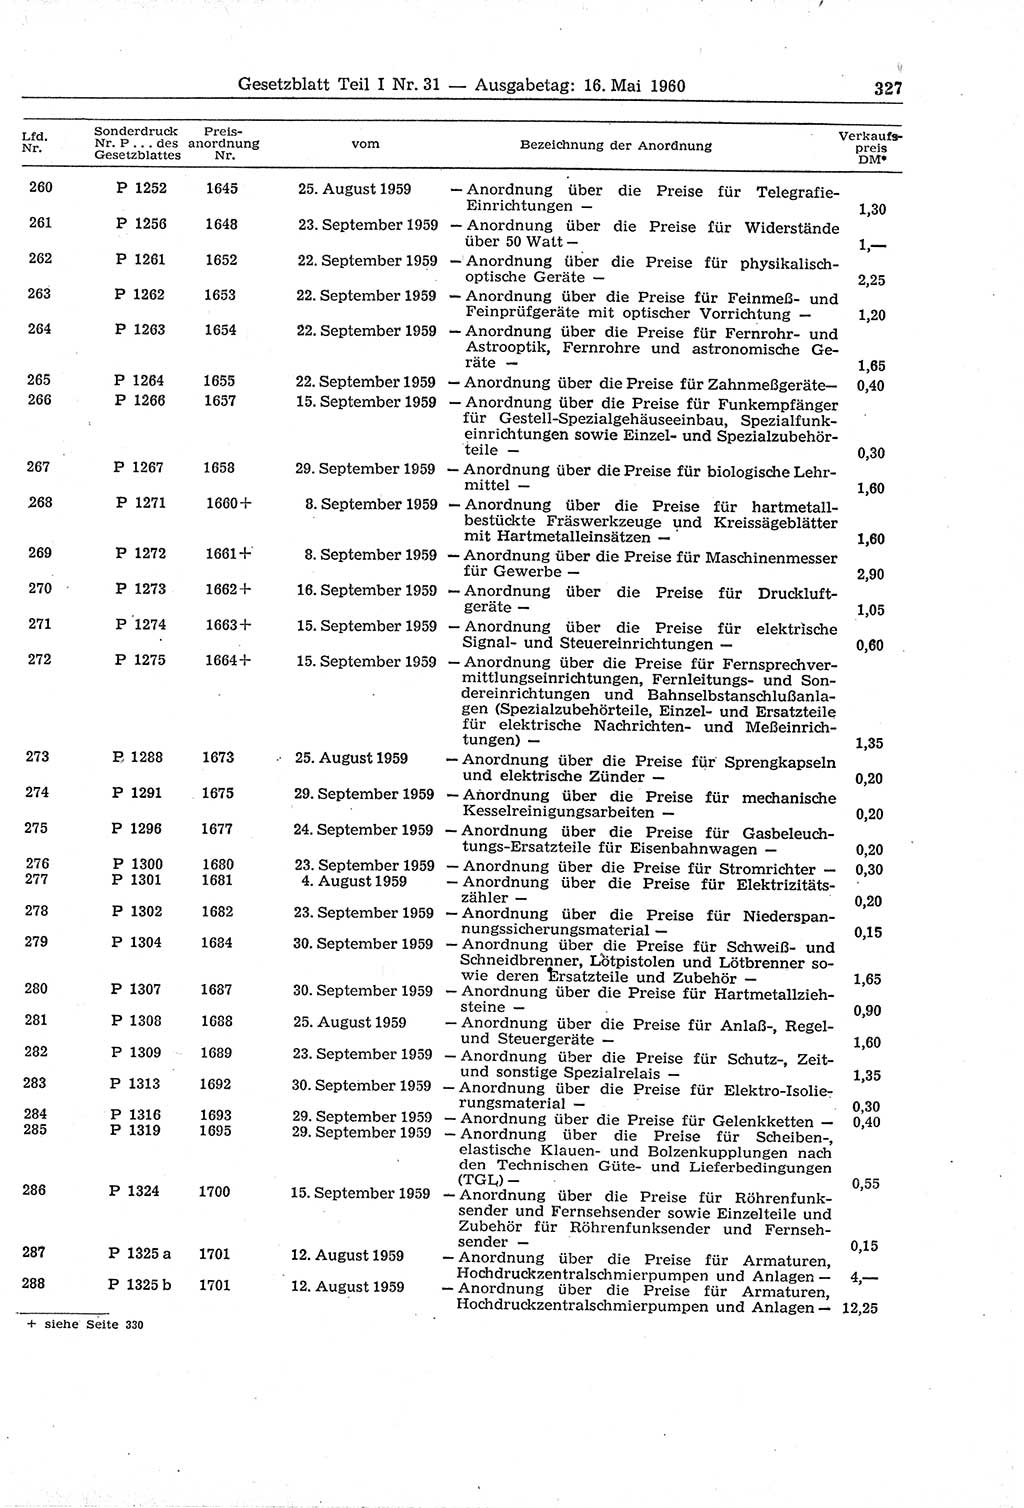 Gesetzblatt (GBl.) der Deutschen Demokratischen Republik (DDR) Teil Ⅰ 1960, Seite 327 (GBl. DDR Ⅰ 1960, S. 327)